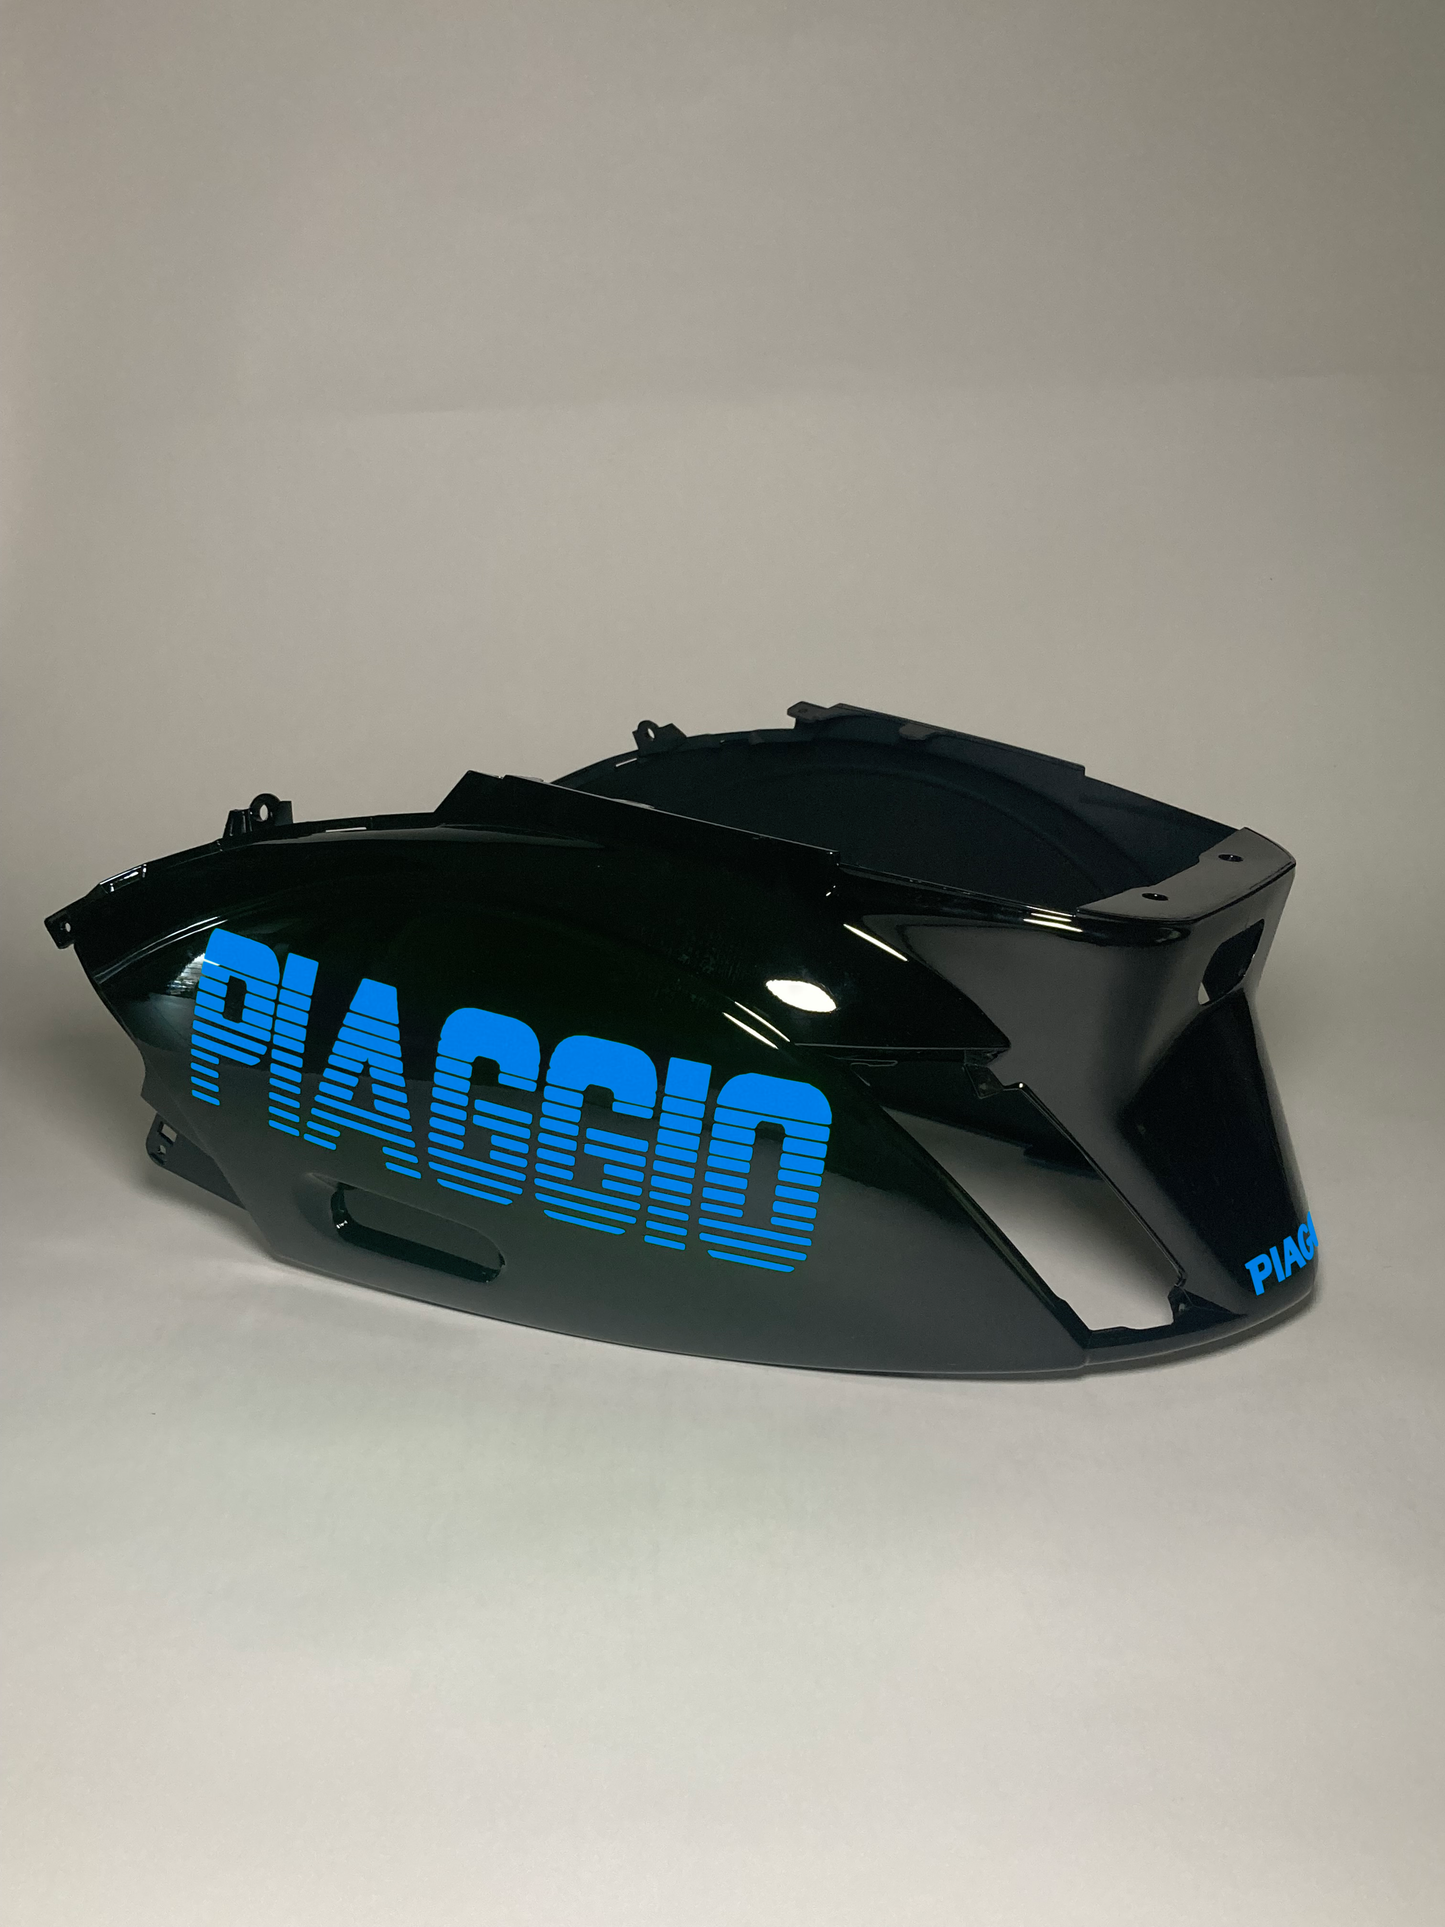 Reißverschluss Piaggio | Hellblau